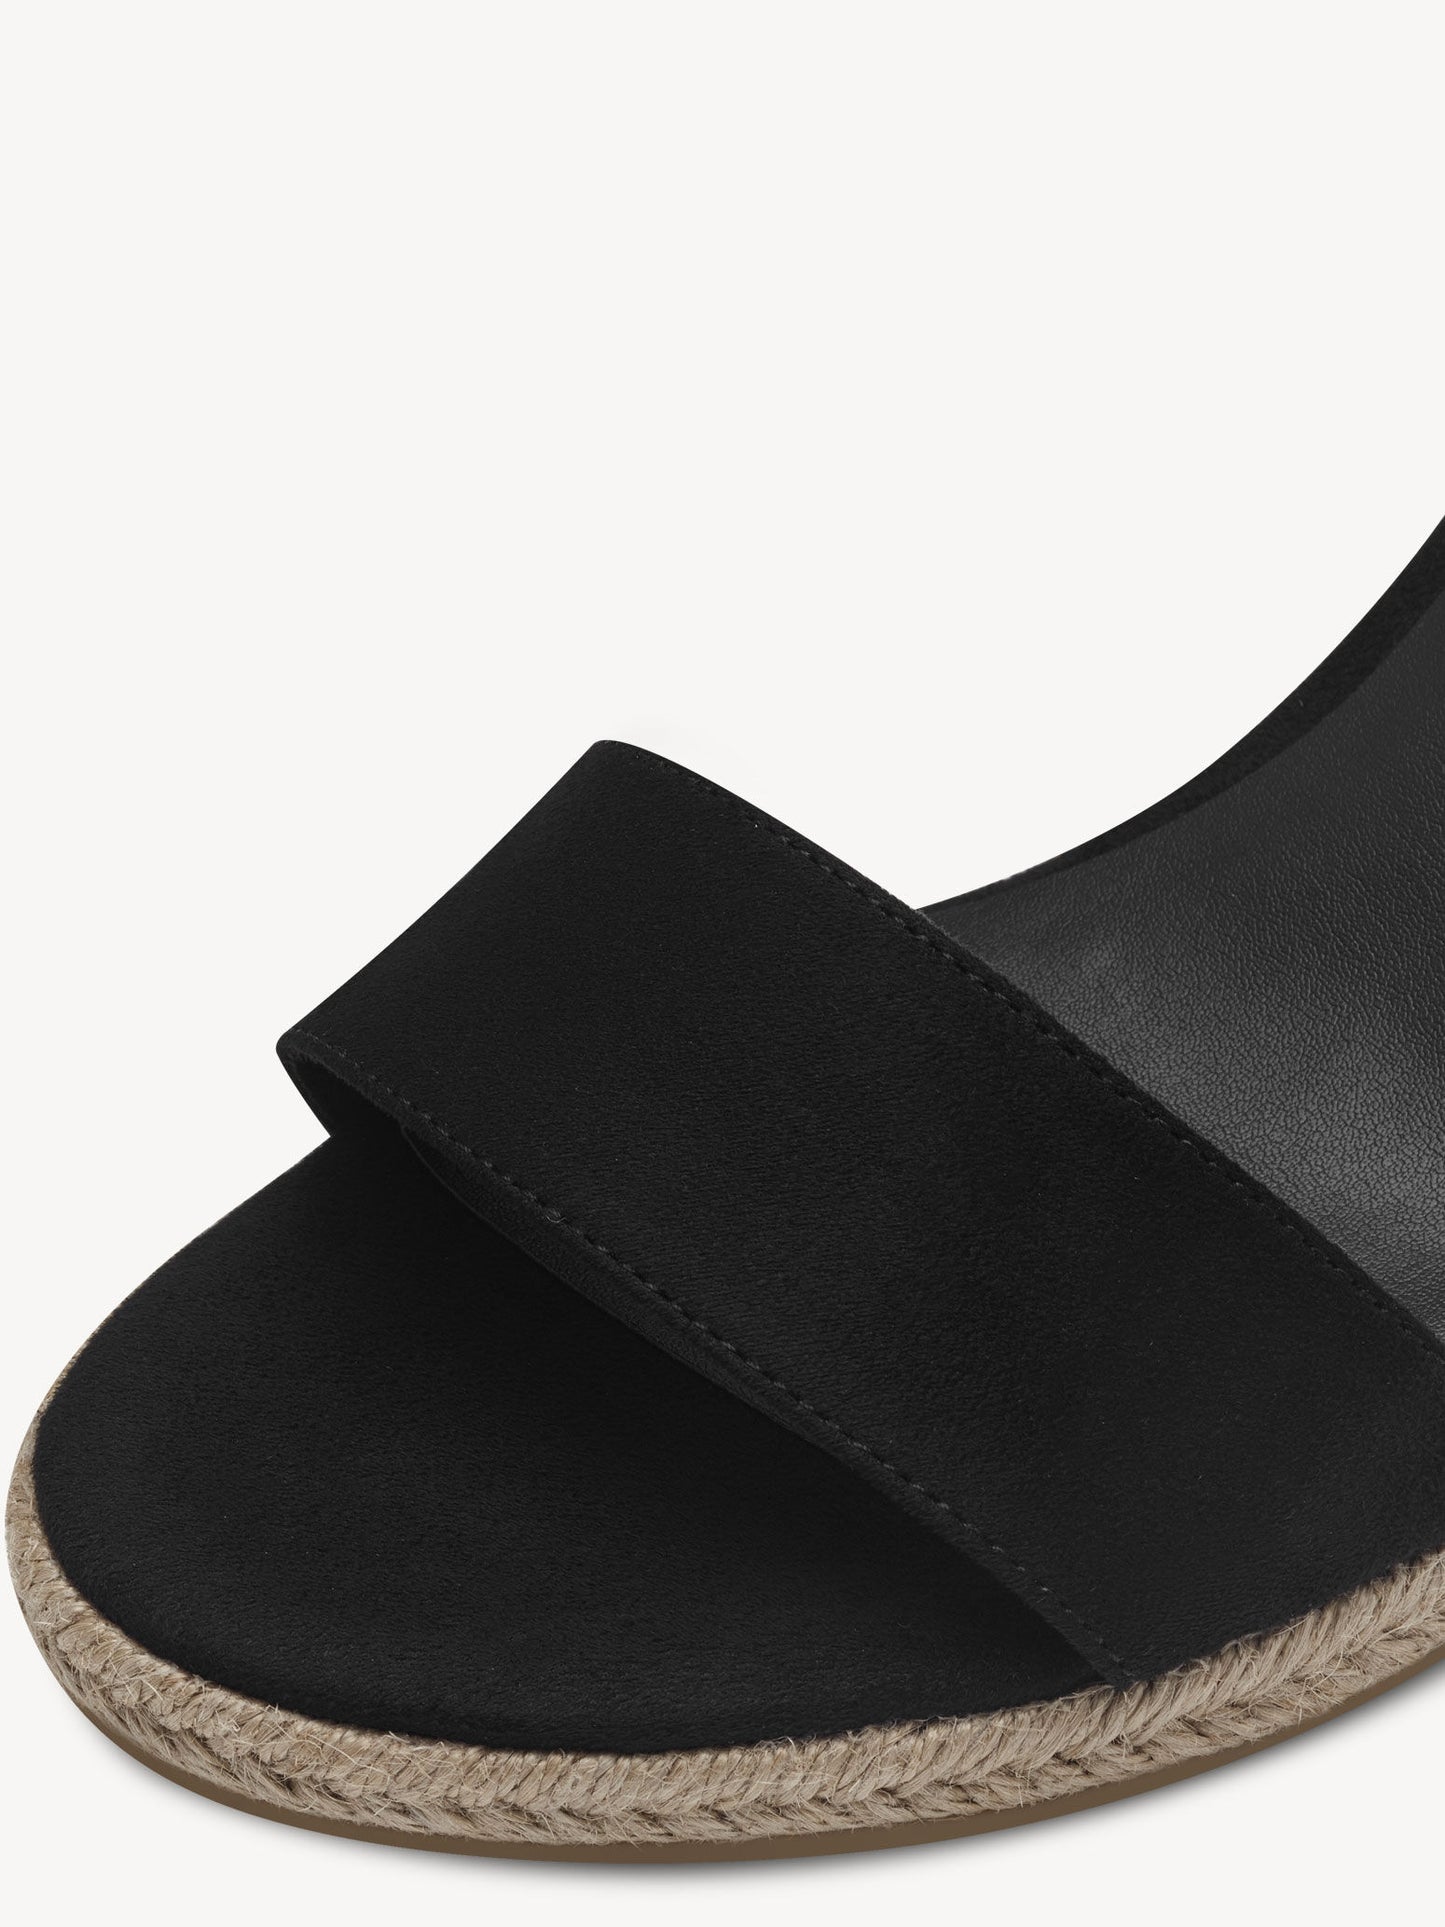 Tamaris Women's 1-28300-42 Wedge Heel Sandals Black